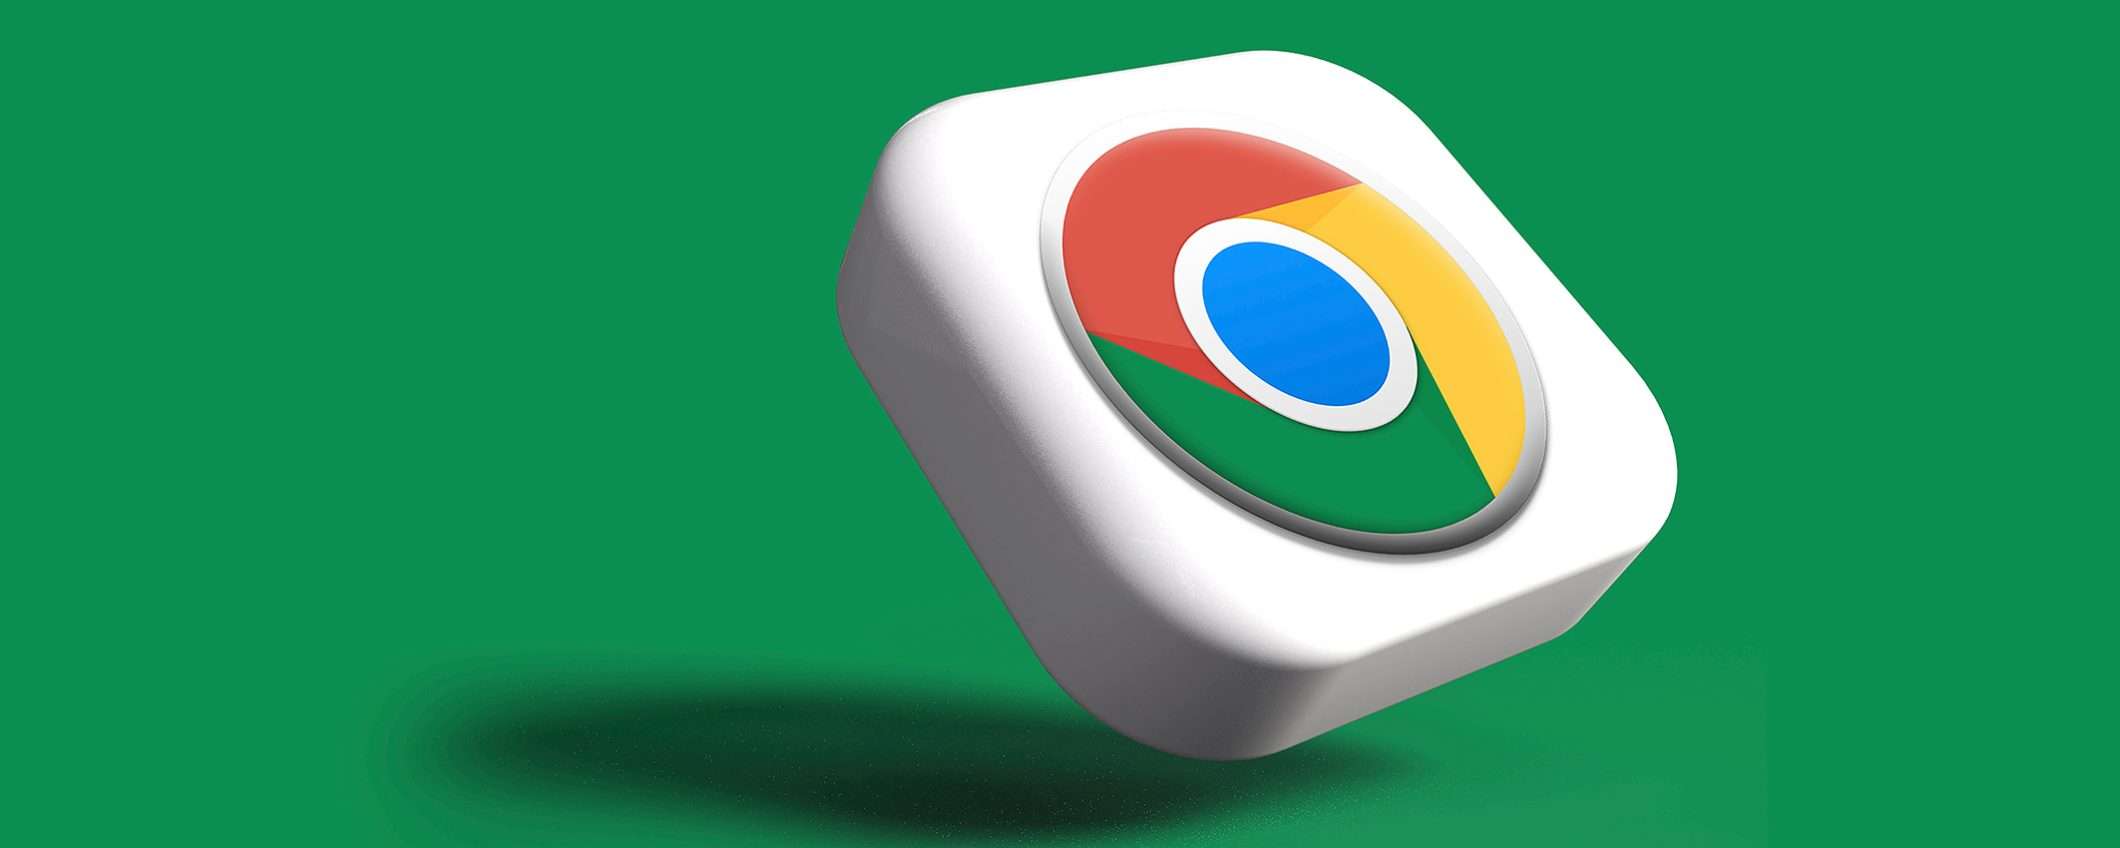 Chrome si aggiorna per iOS e Android, con 5 nuove funzionalità